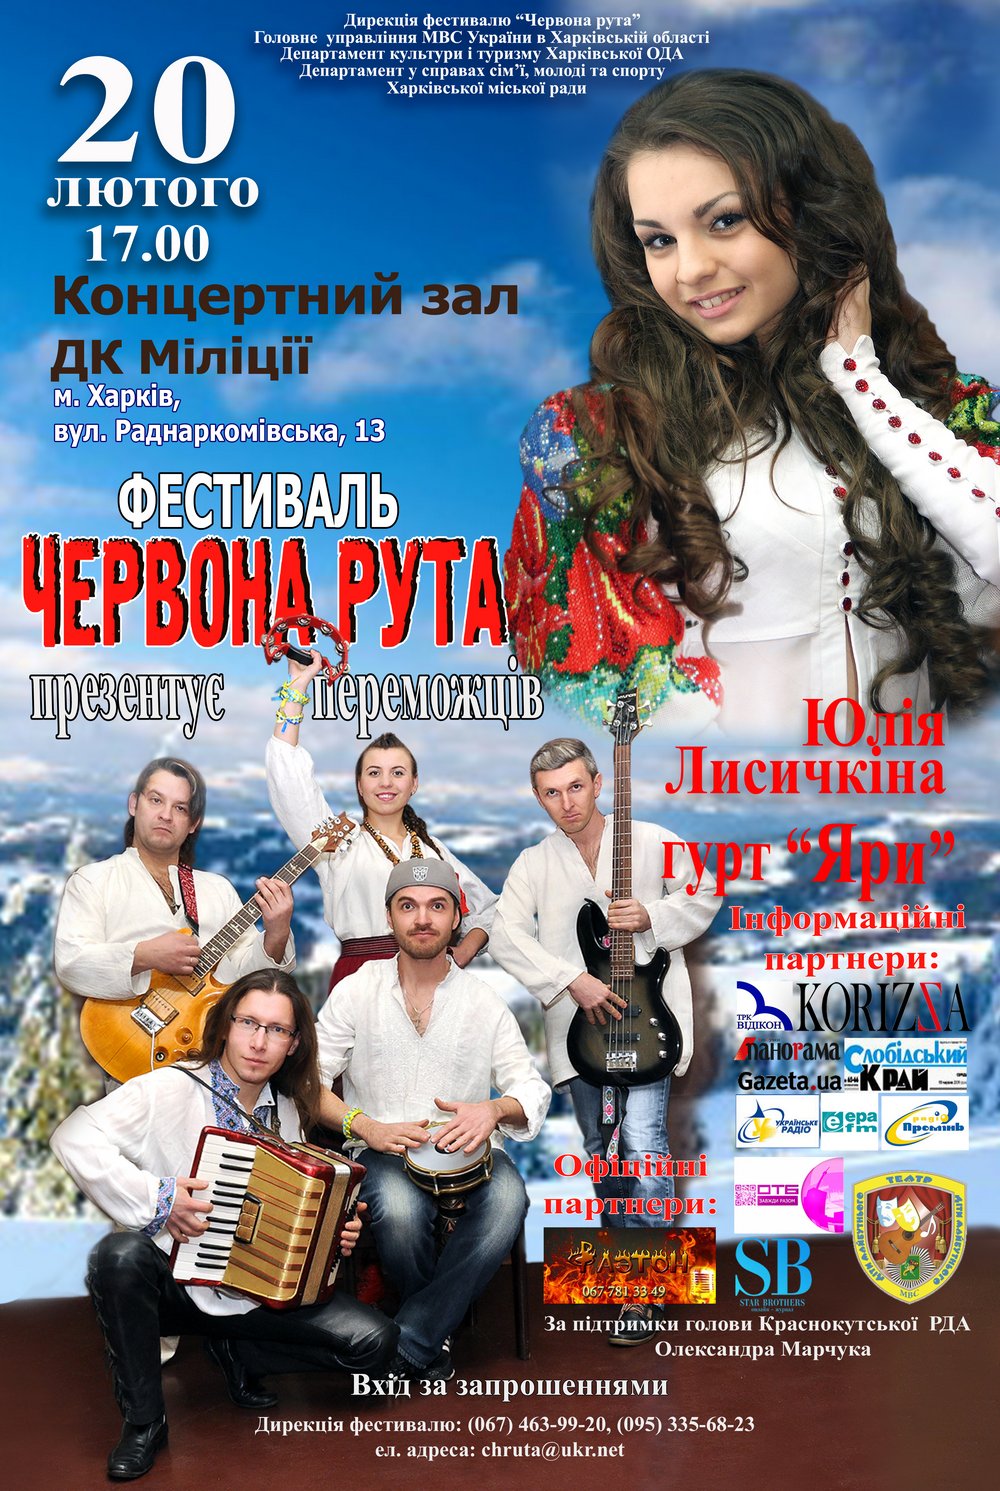 20 лютого 2015 у Харкові відбувся концерт переможців Харківського обласного відбіркового конкурсу